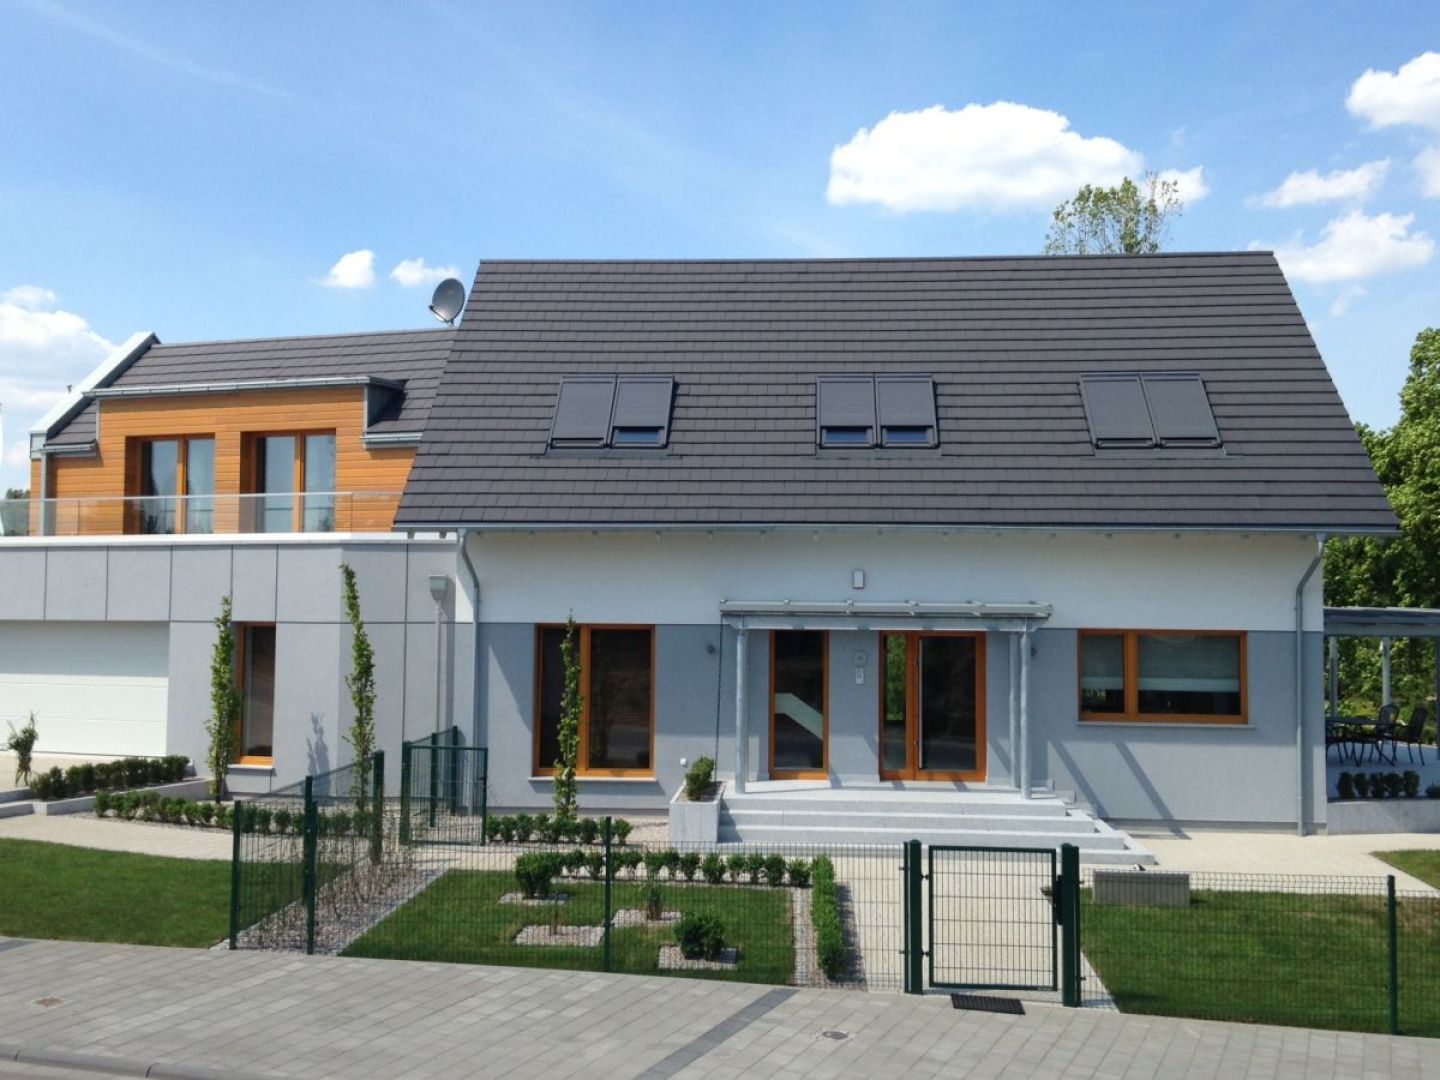 Dom uzyskał wskaźnik zapotrzebowania energii do ogrzewania na poziomie 15 kWh/(m² ·rok), co daje mu status domu pasywnego. Fot. Saint-Gobain